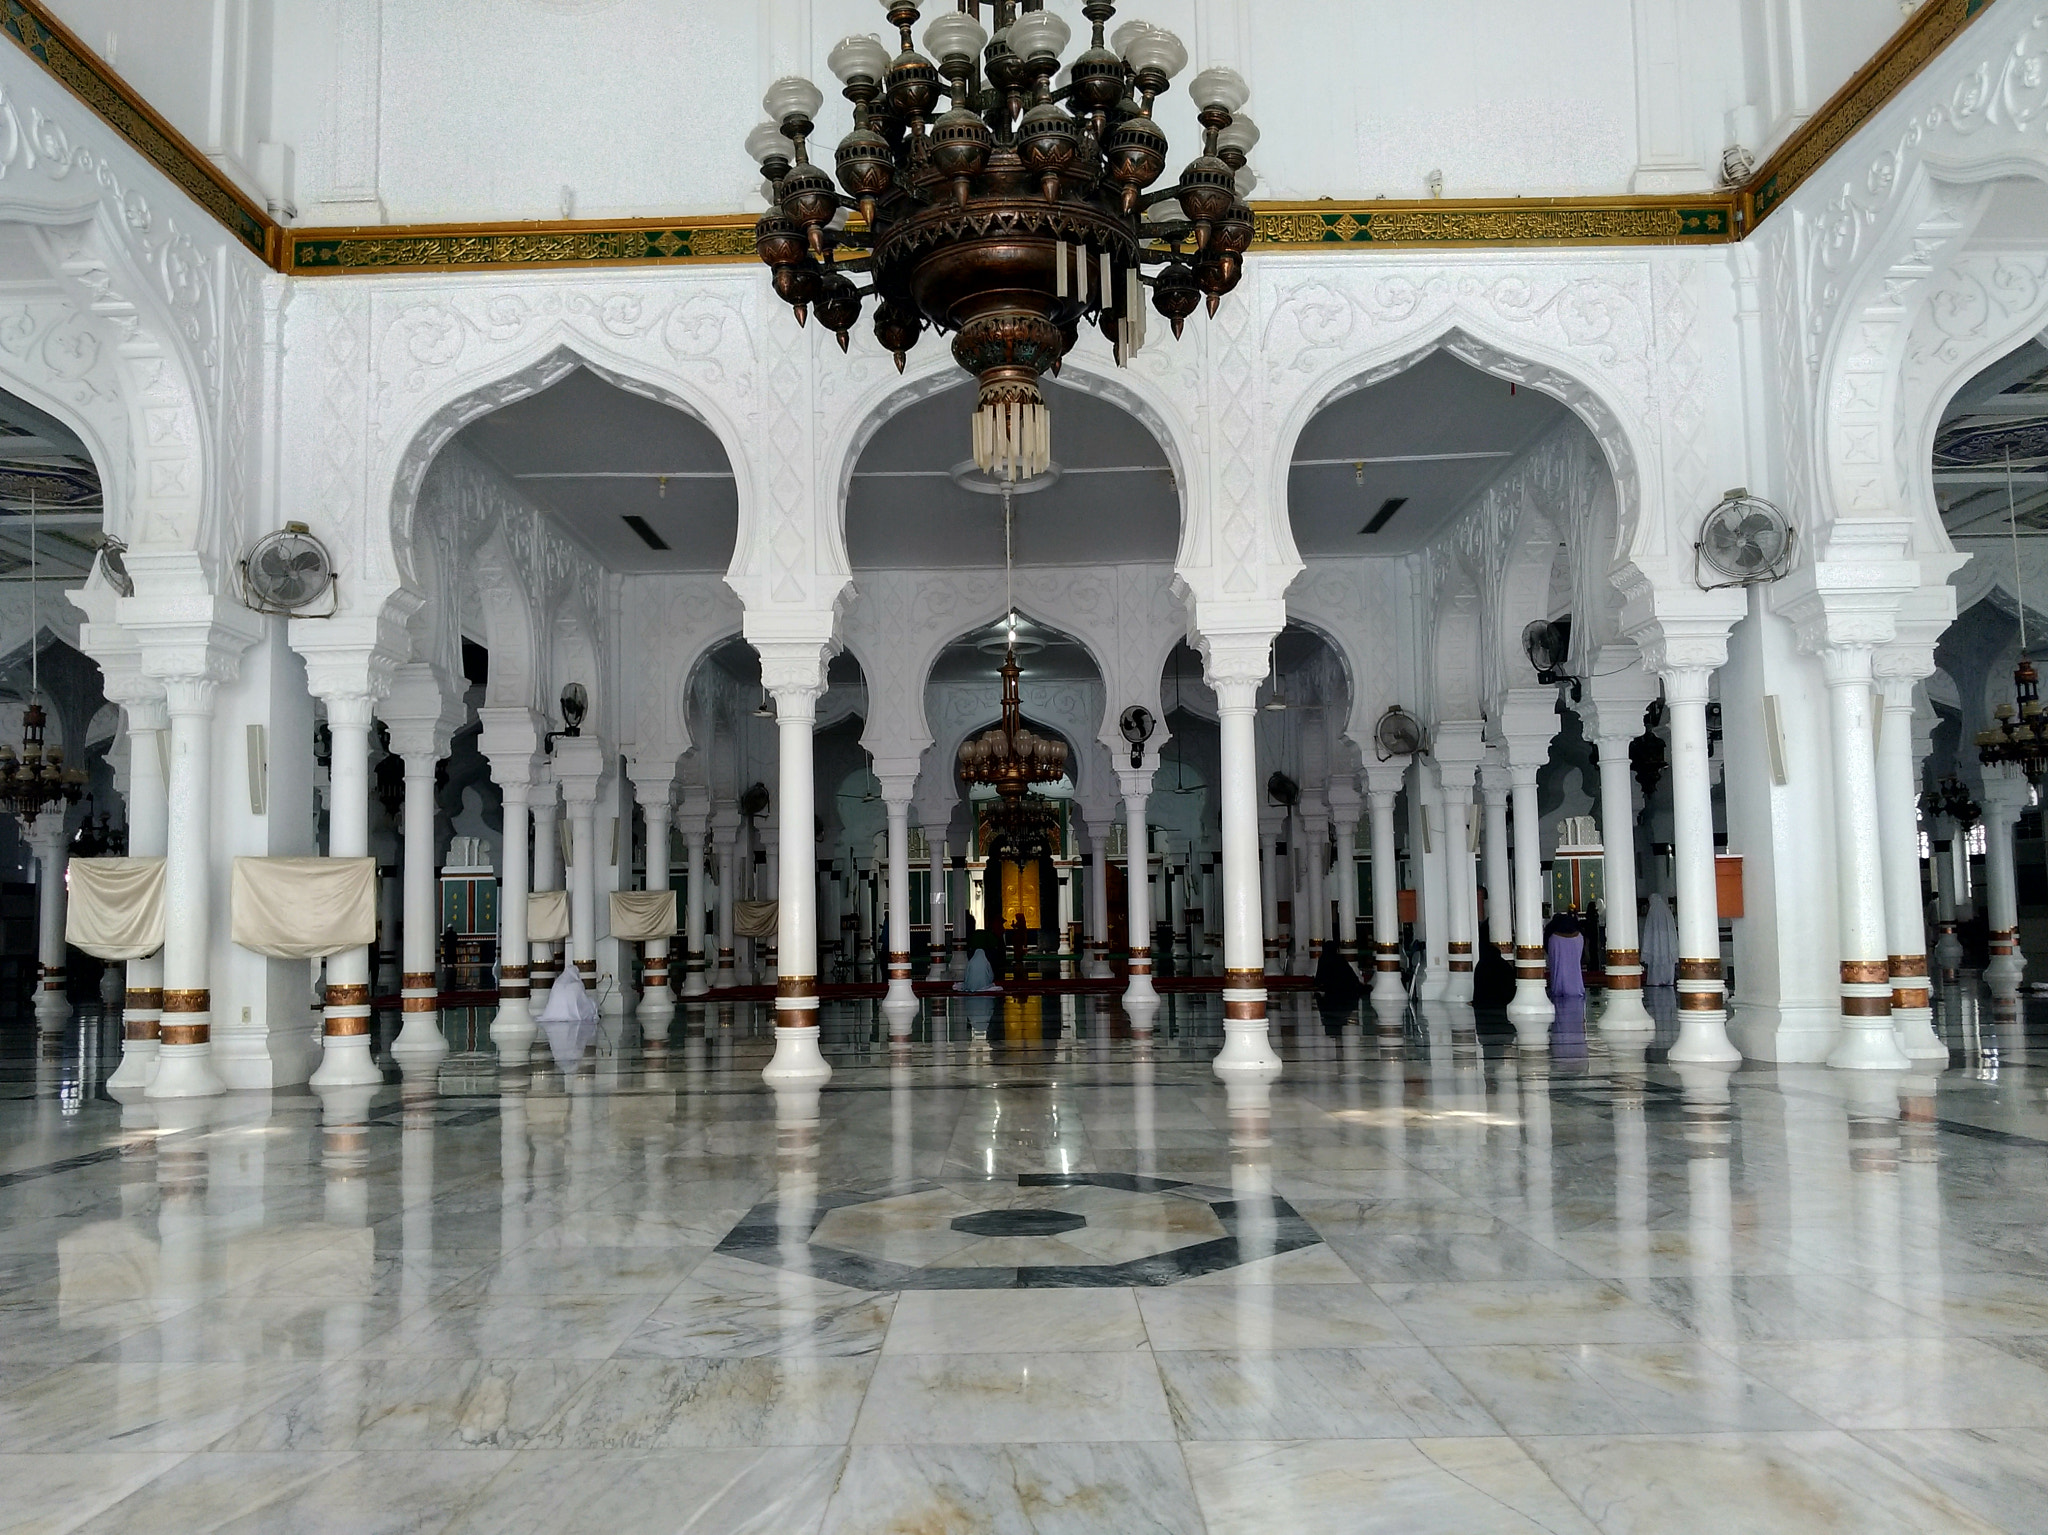 ASUS ZenFone 3 Zoom (ZE553KL) sample photo. Interior baiturahman grand mosque photography